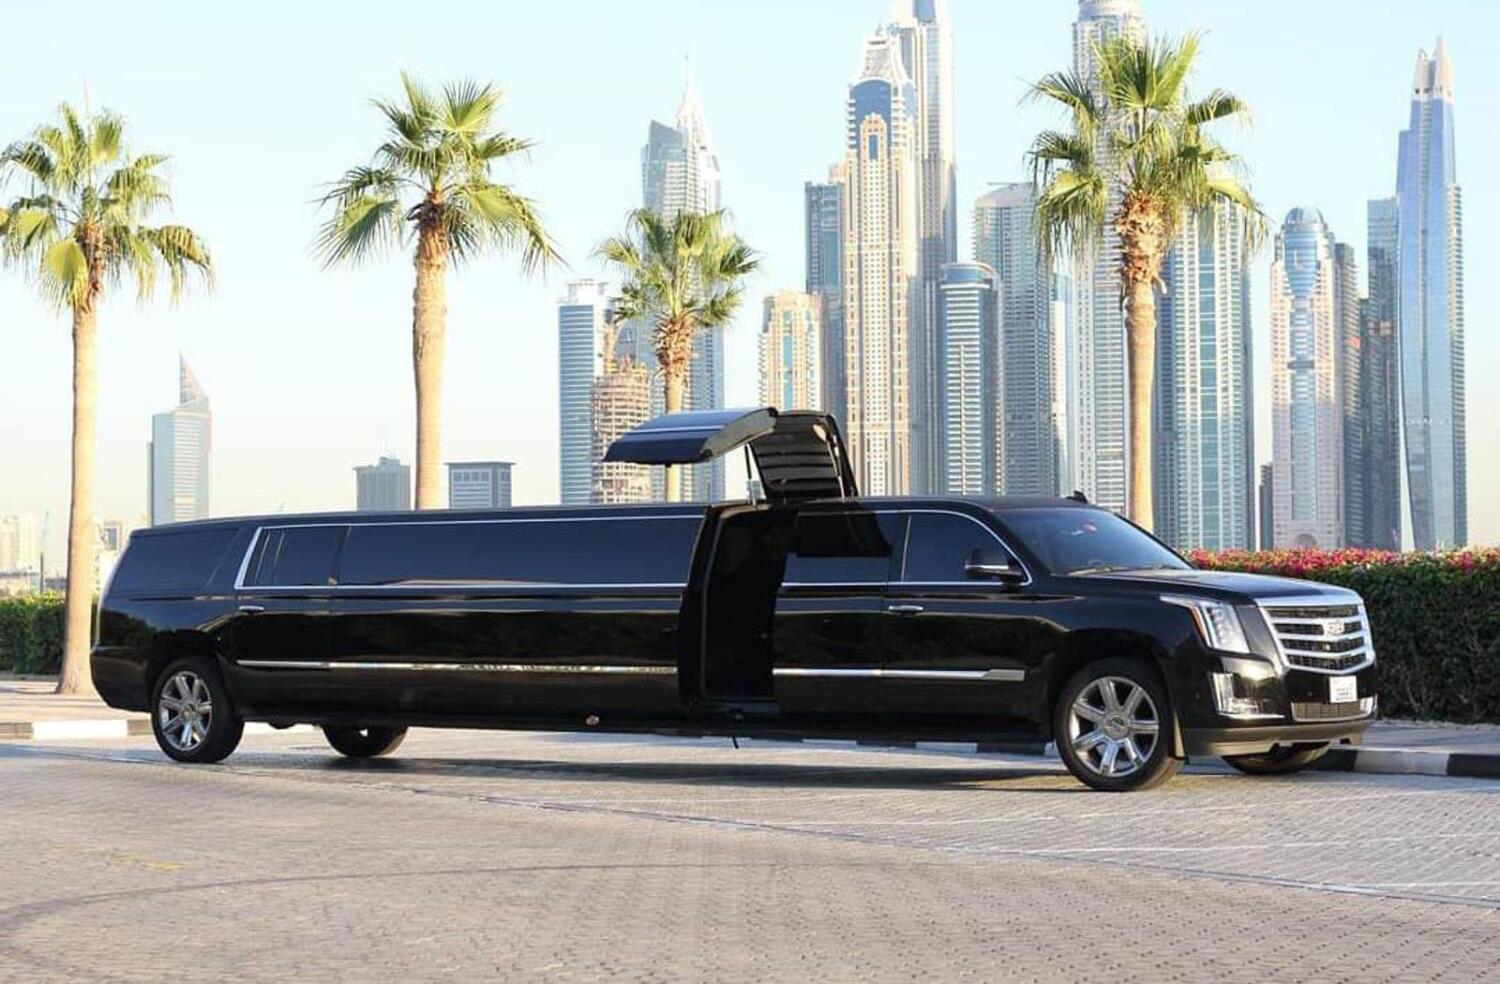 What cars do Dubai's limousine services use?